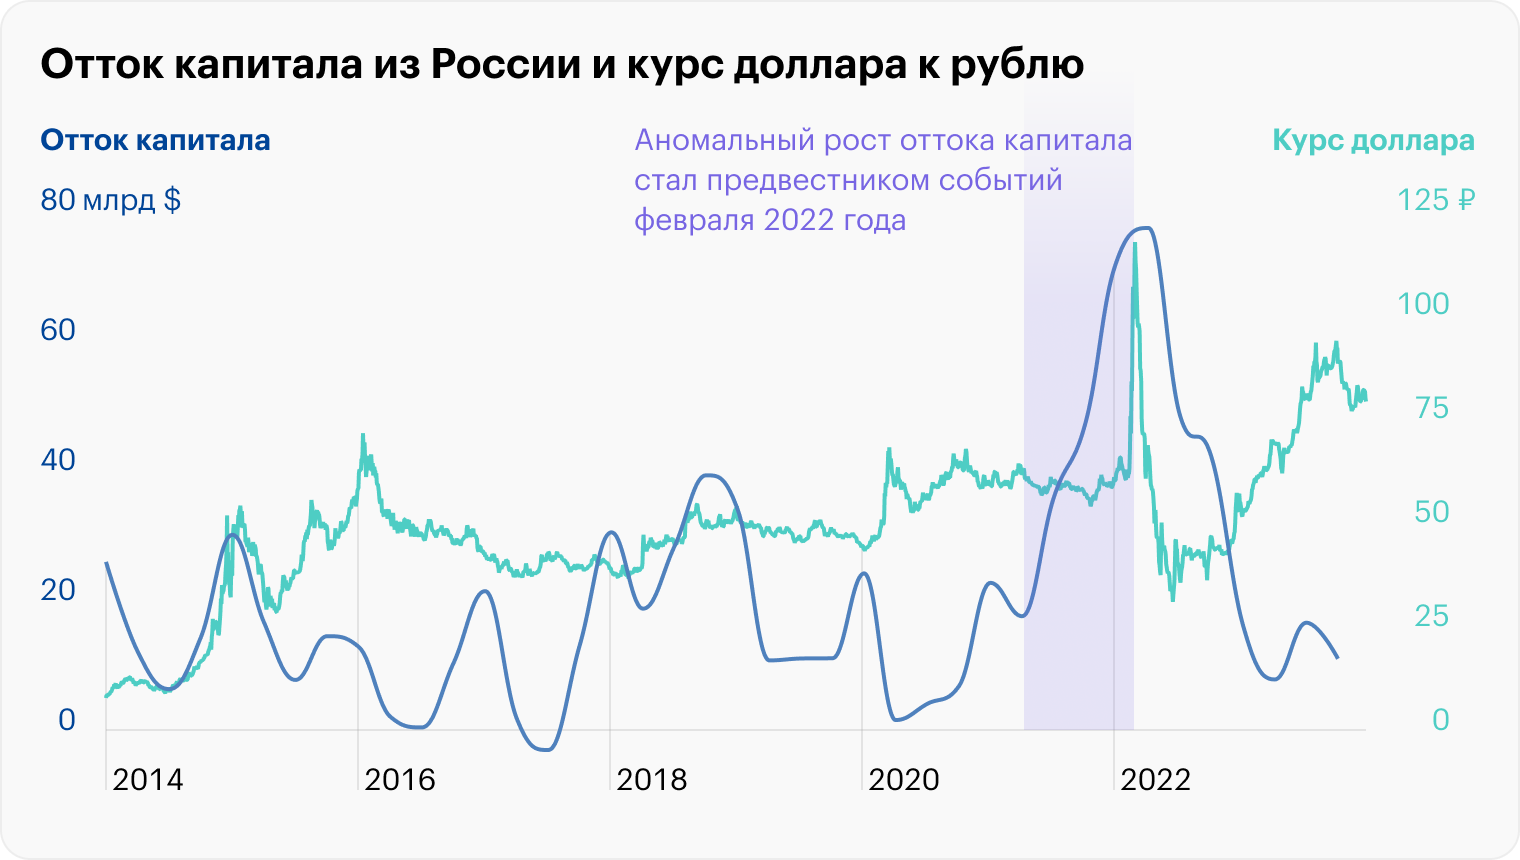 Источник: Банк России (курс), Trading Economics (капитал)